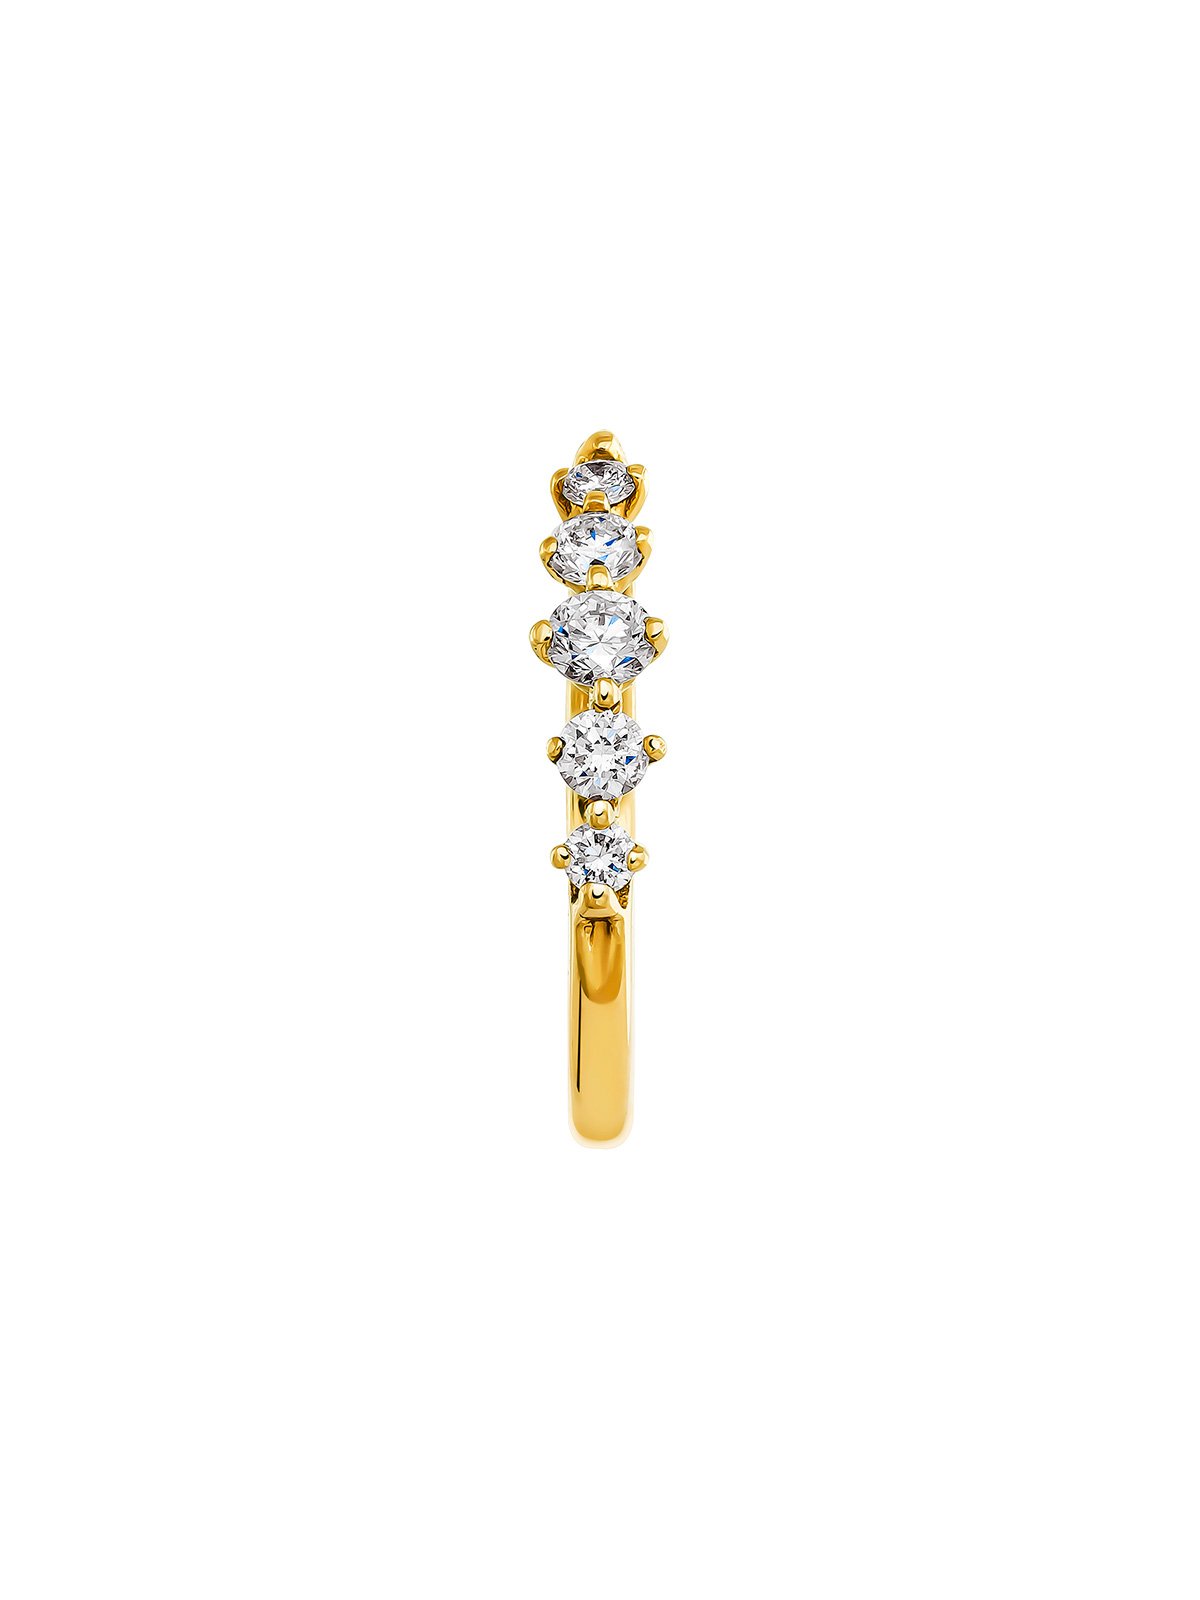 Boucle d'oreille unique en or jaune 18 carats avec diamants